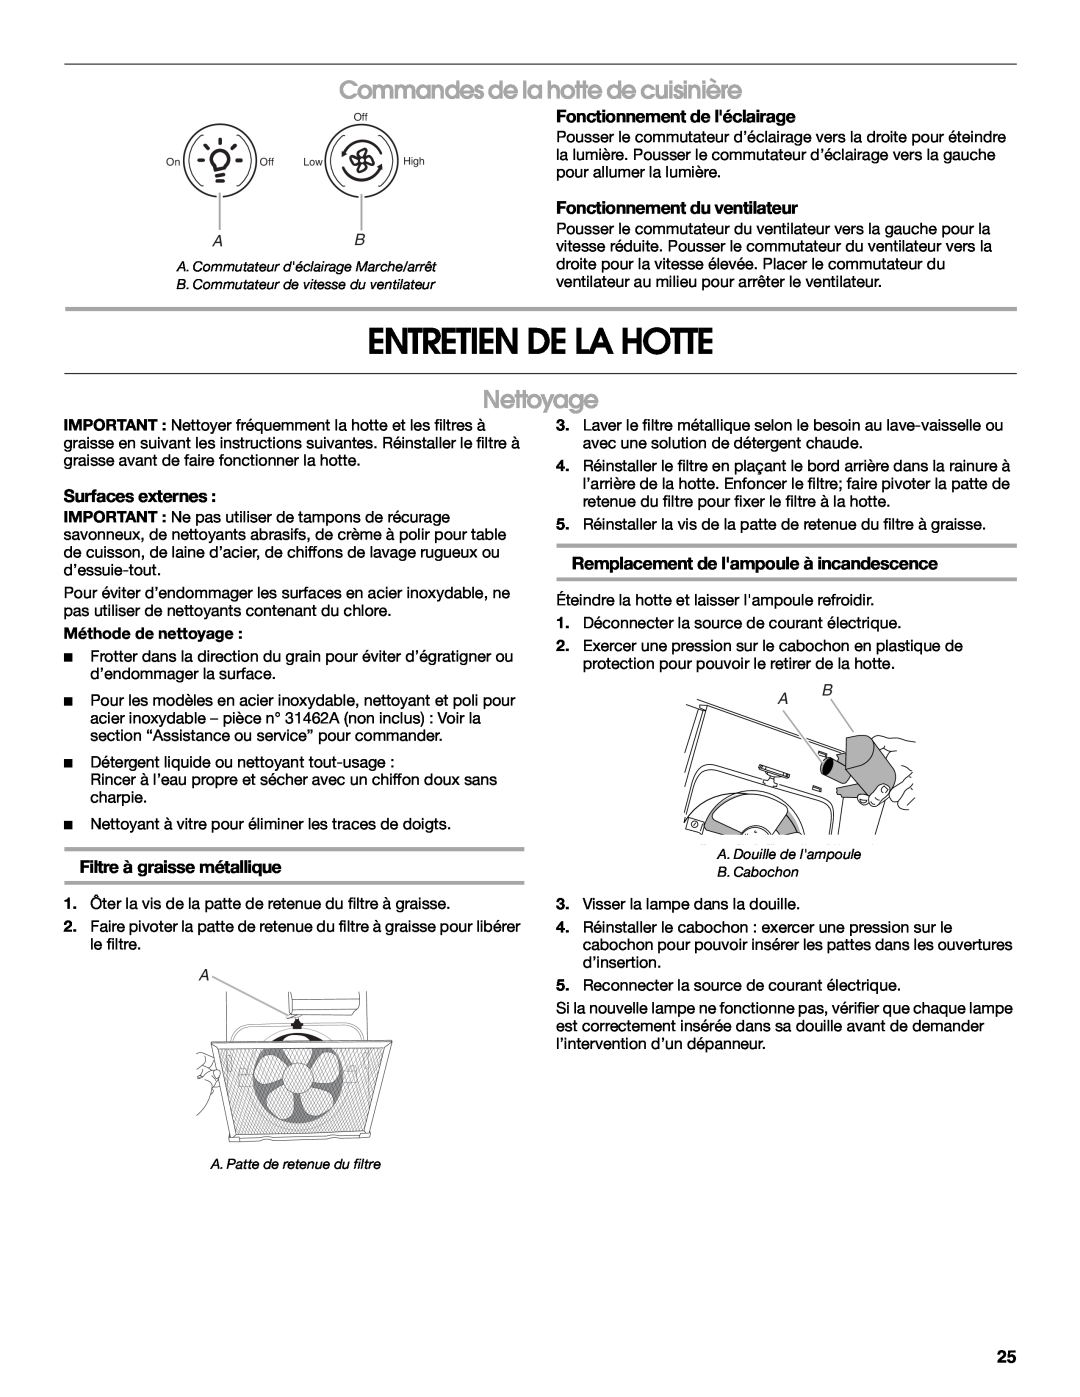 Whirlpool UXT3030AY Entretien De La Hotte, Commandes de la hotte de cuisinière, Nettoyage, Fonctionnement de léclairage 